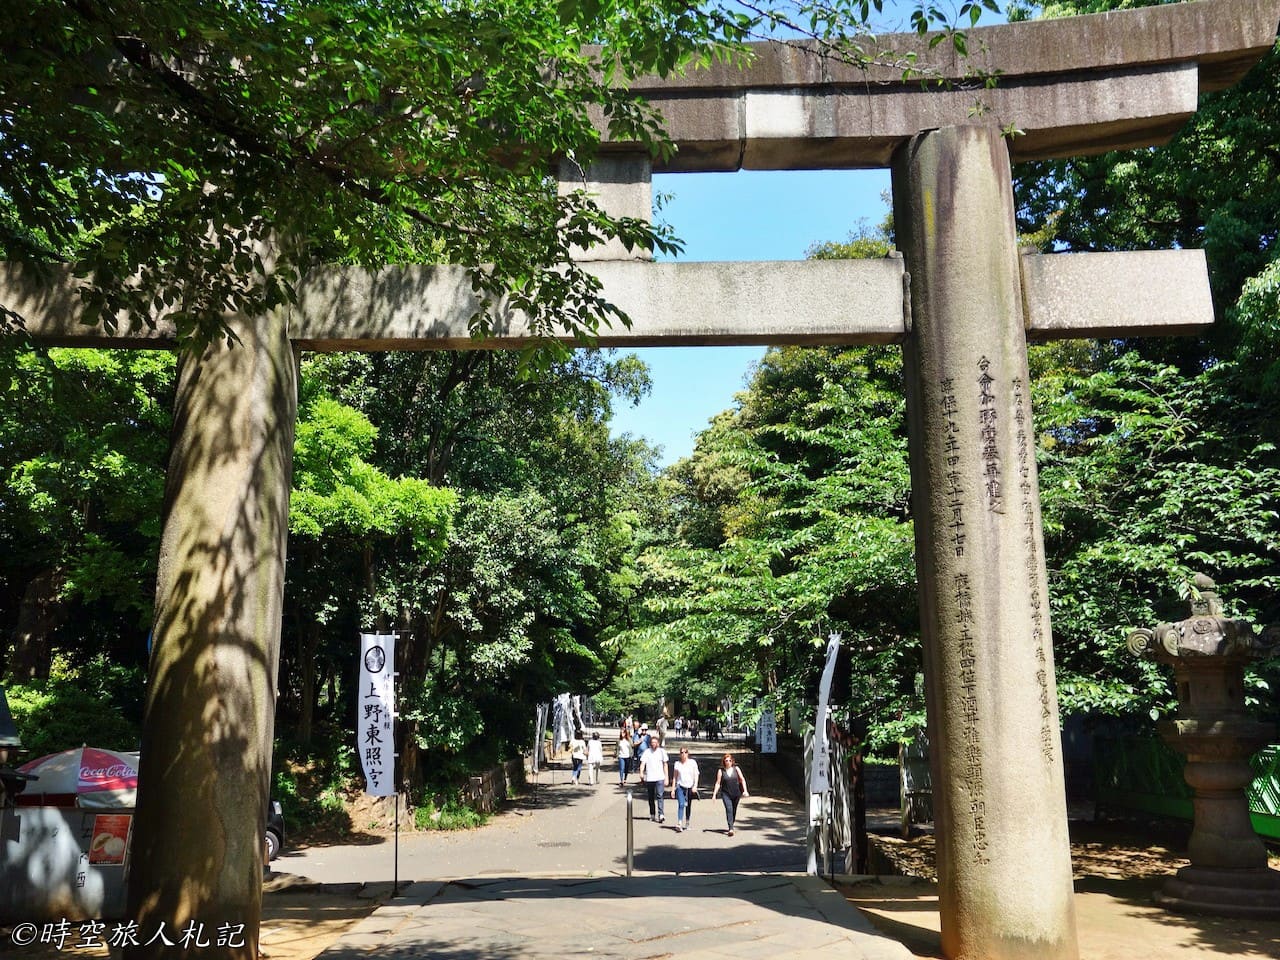 上野公園,上野東照宮,花園稻荷神社,五重塔,不忍池 4